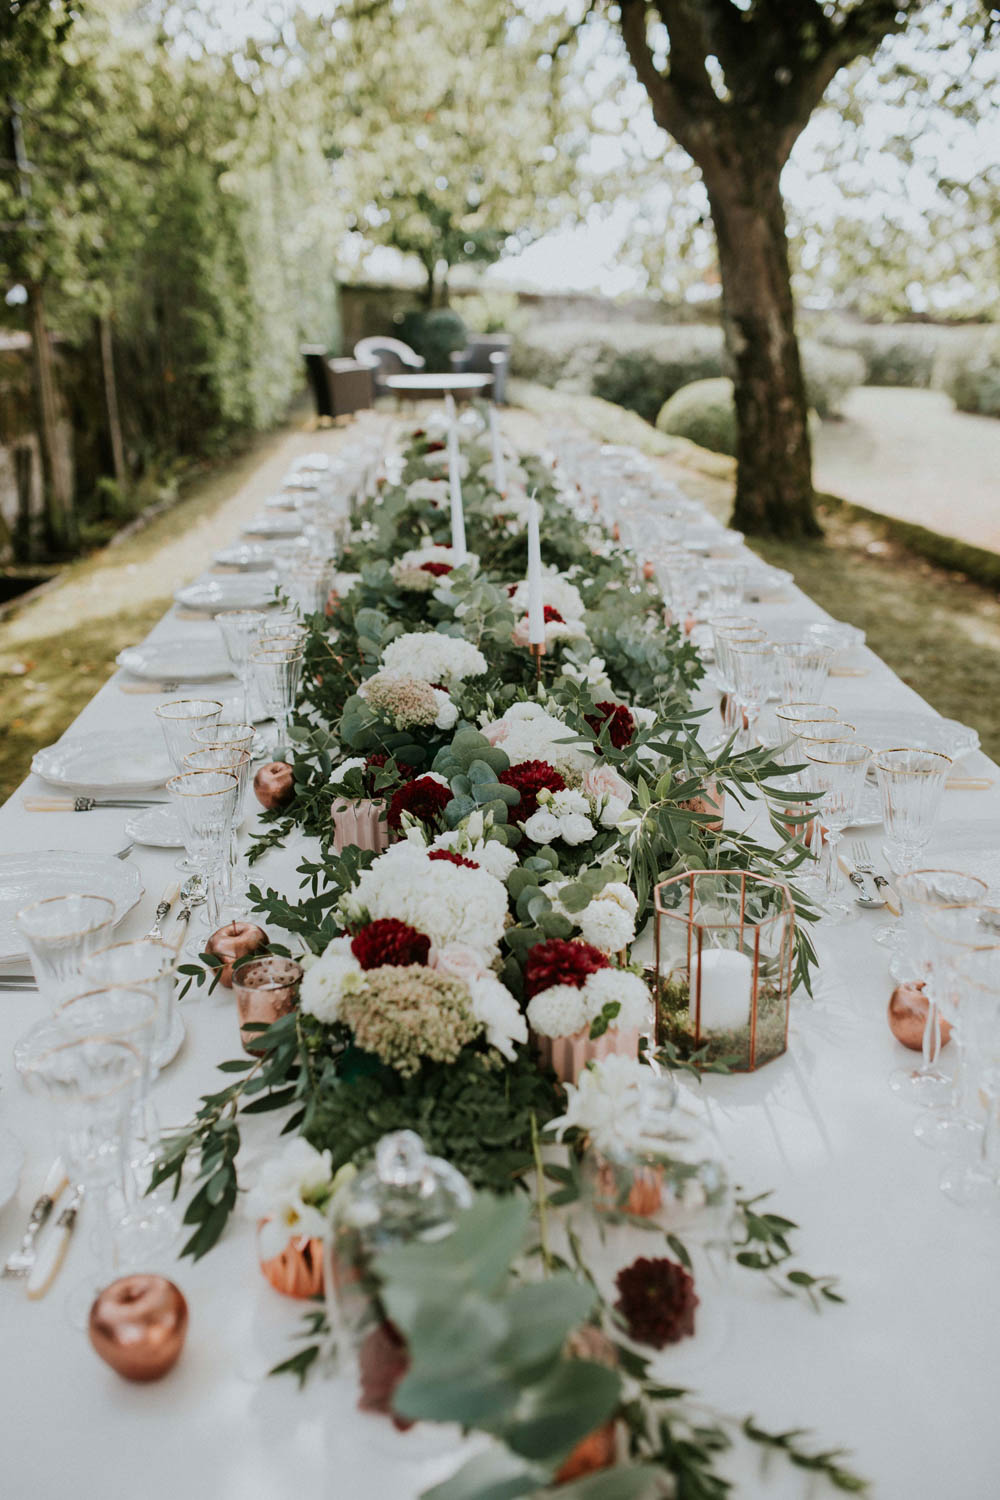 Chemin de table fleuri en fleurs fraîches lors de déco de mariage et événement.